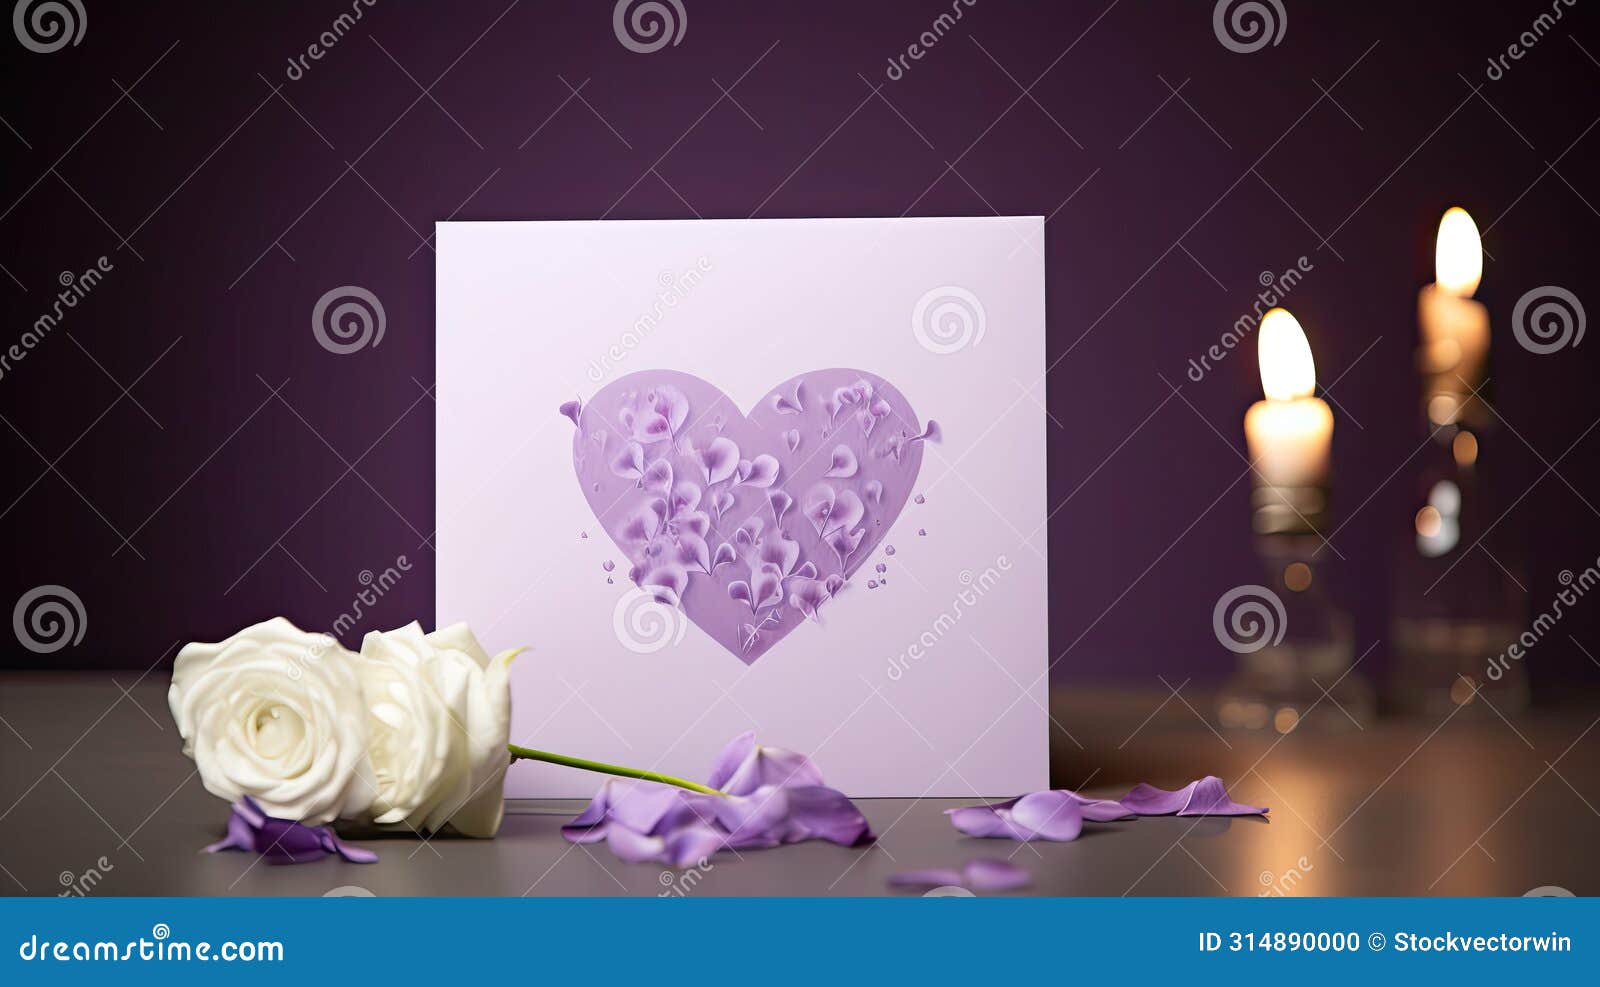 heartfelt purple font